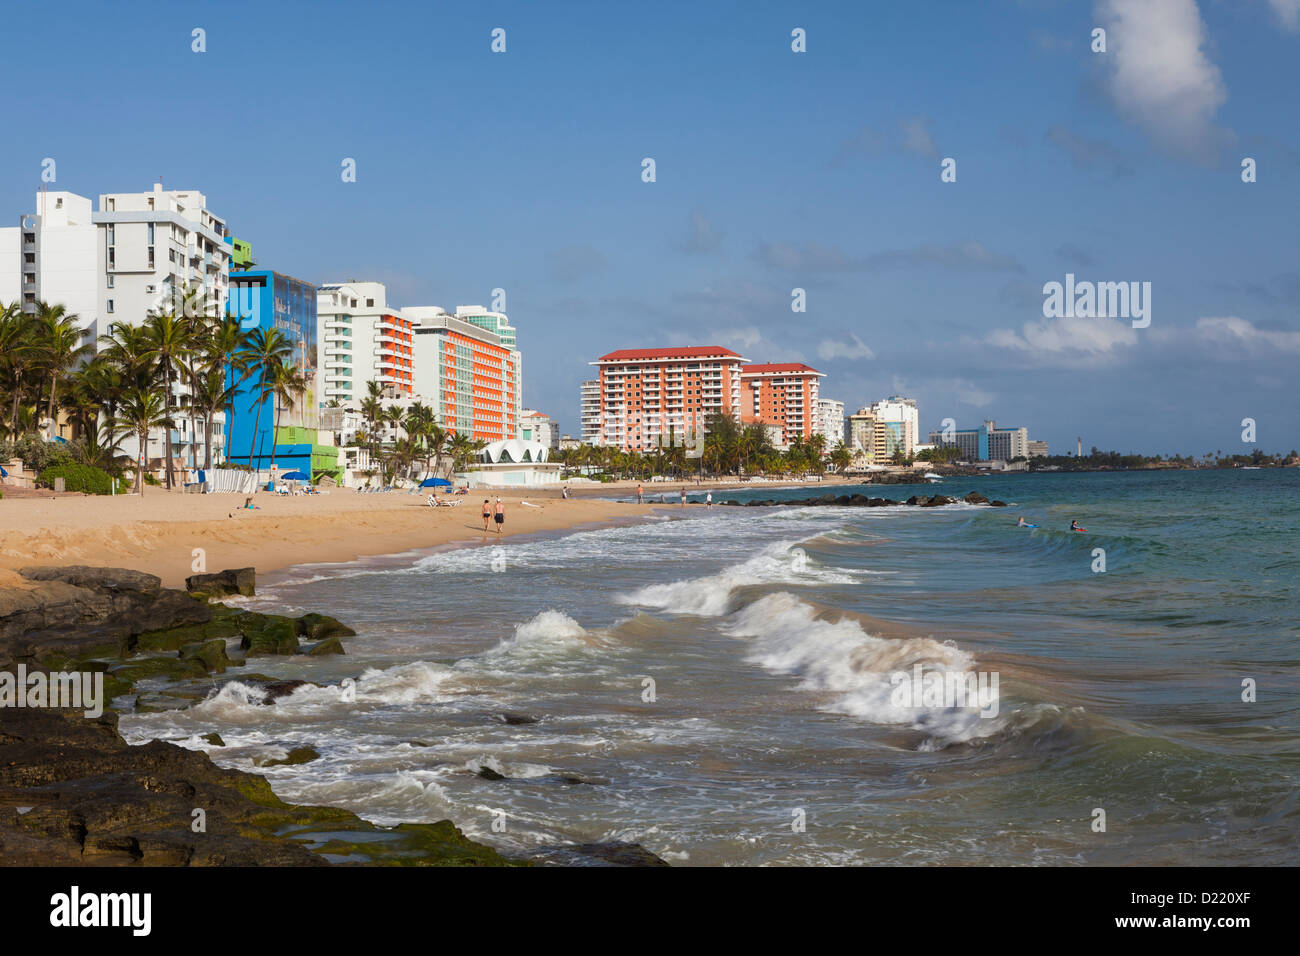 Hotels Along Condado Beach San Juan Puerto Rico Stock Photo Alamy